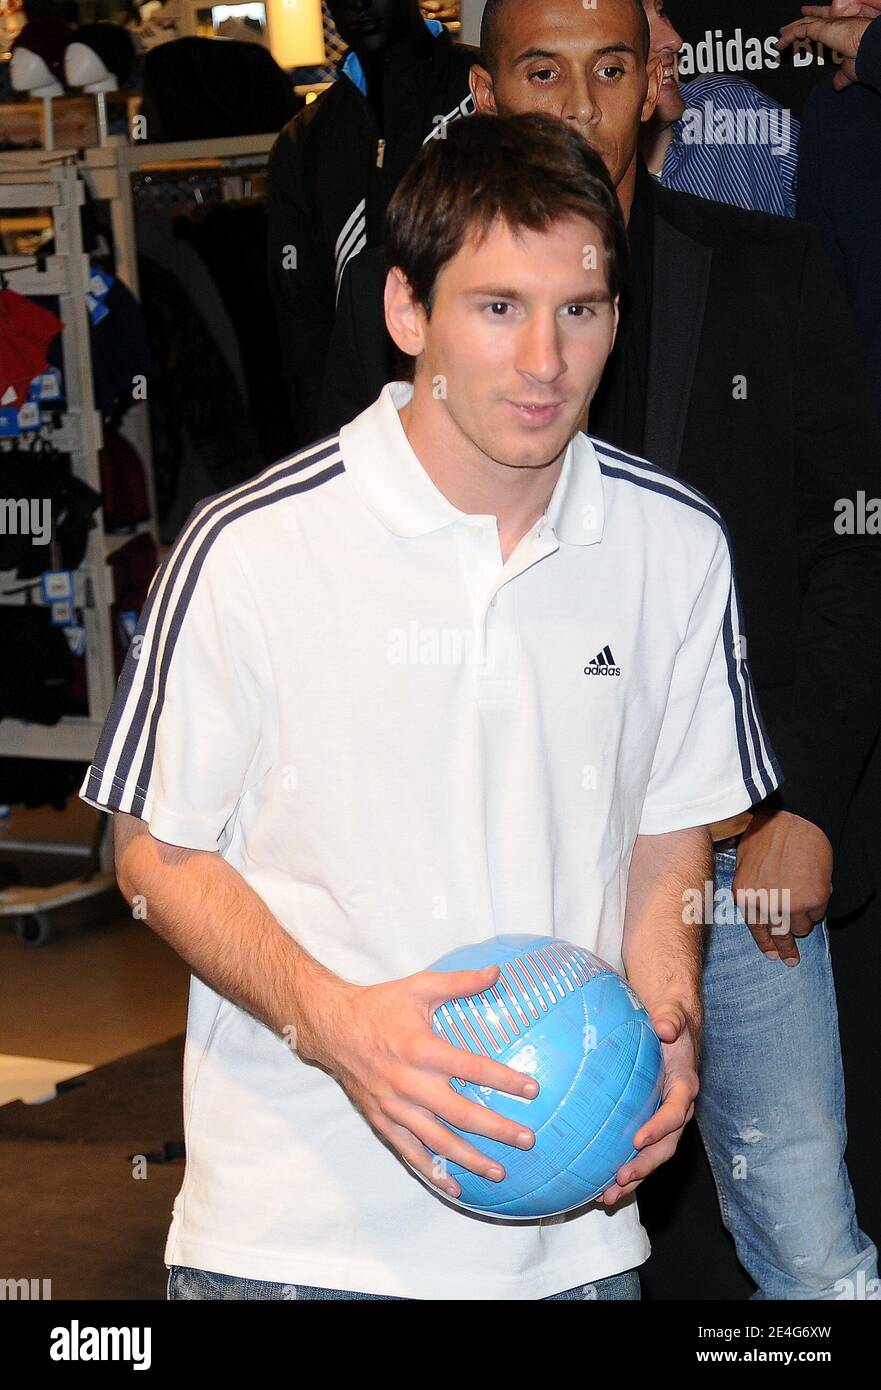 Lionel Messi, futbolista argentino del FC Barcelona durante una sesión de  dedicación en una tienda de patrocinadores Adidas en los Campos Elíseos en  París, Francia, el 27 de octubre de 2009. Lionel